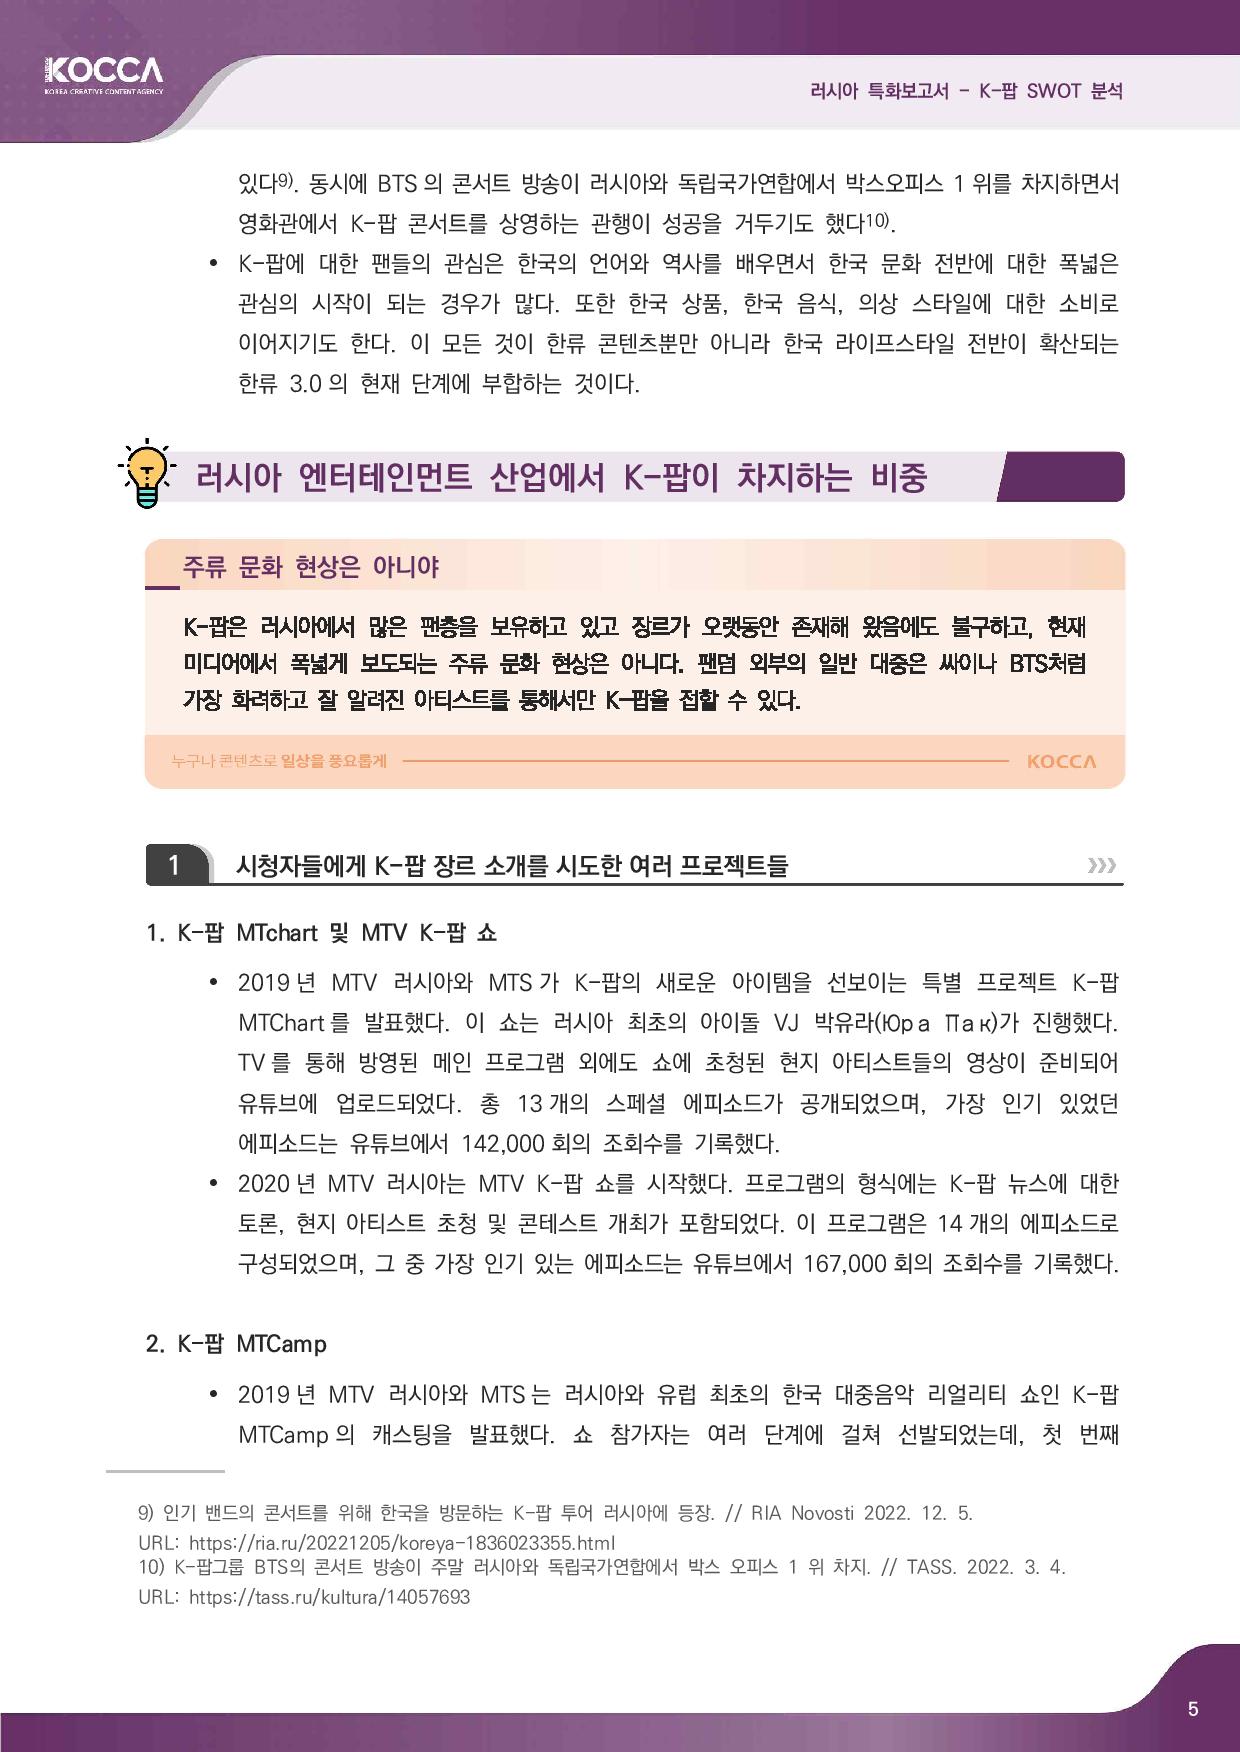 2. 러시아 특화보고서_K-pop SWOT 분석 (3)-page-007.jpg